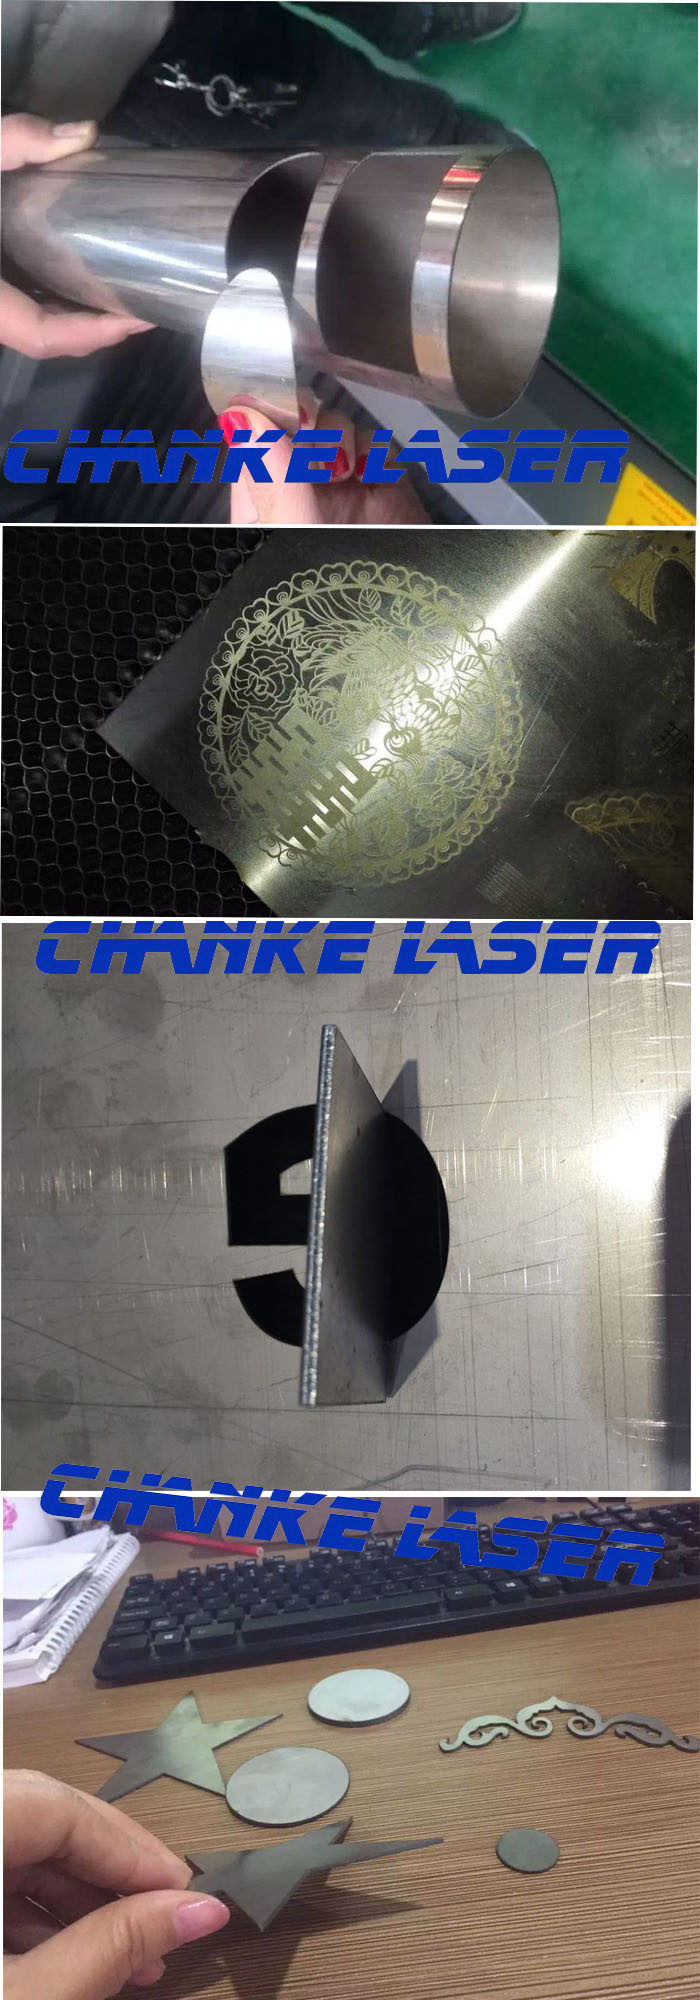 Ck1390 130W Reci Metal Nonmetal CNC Laser Cutting Machine